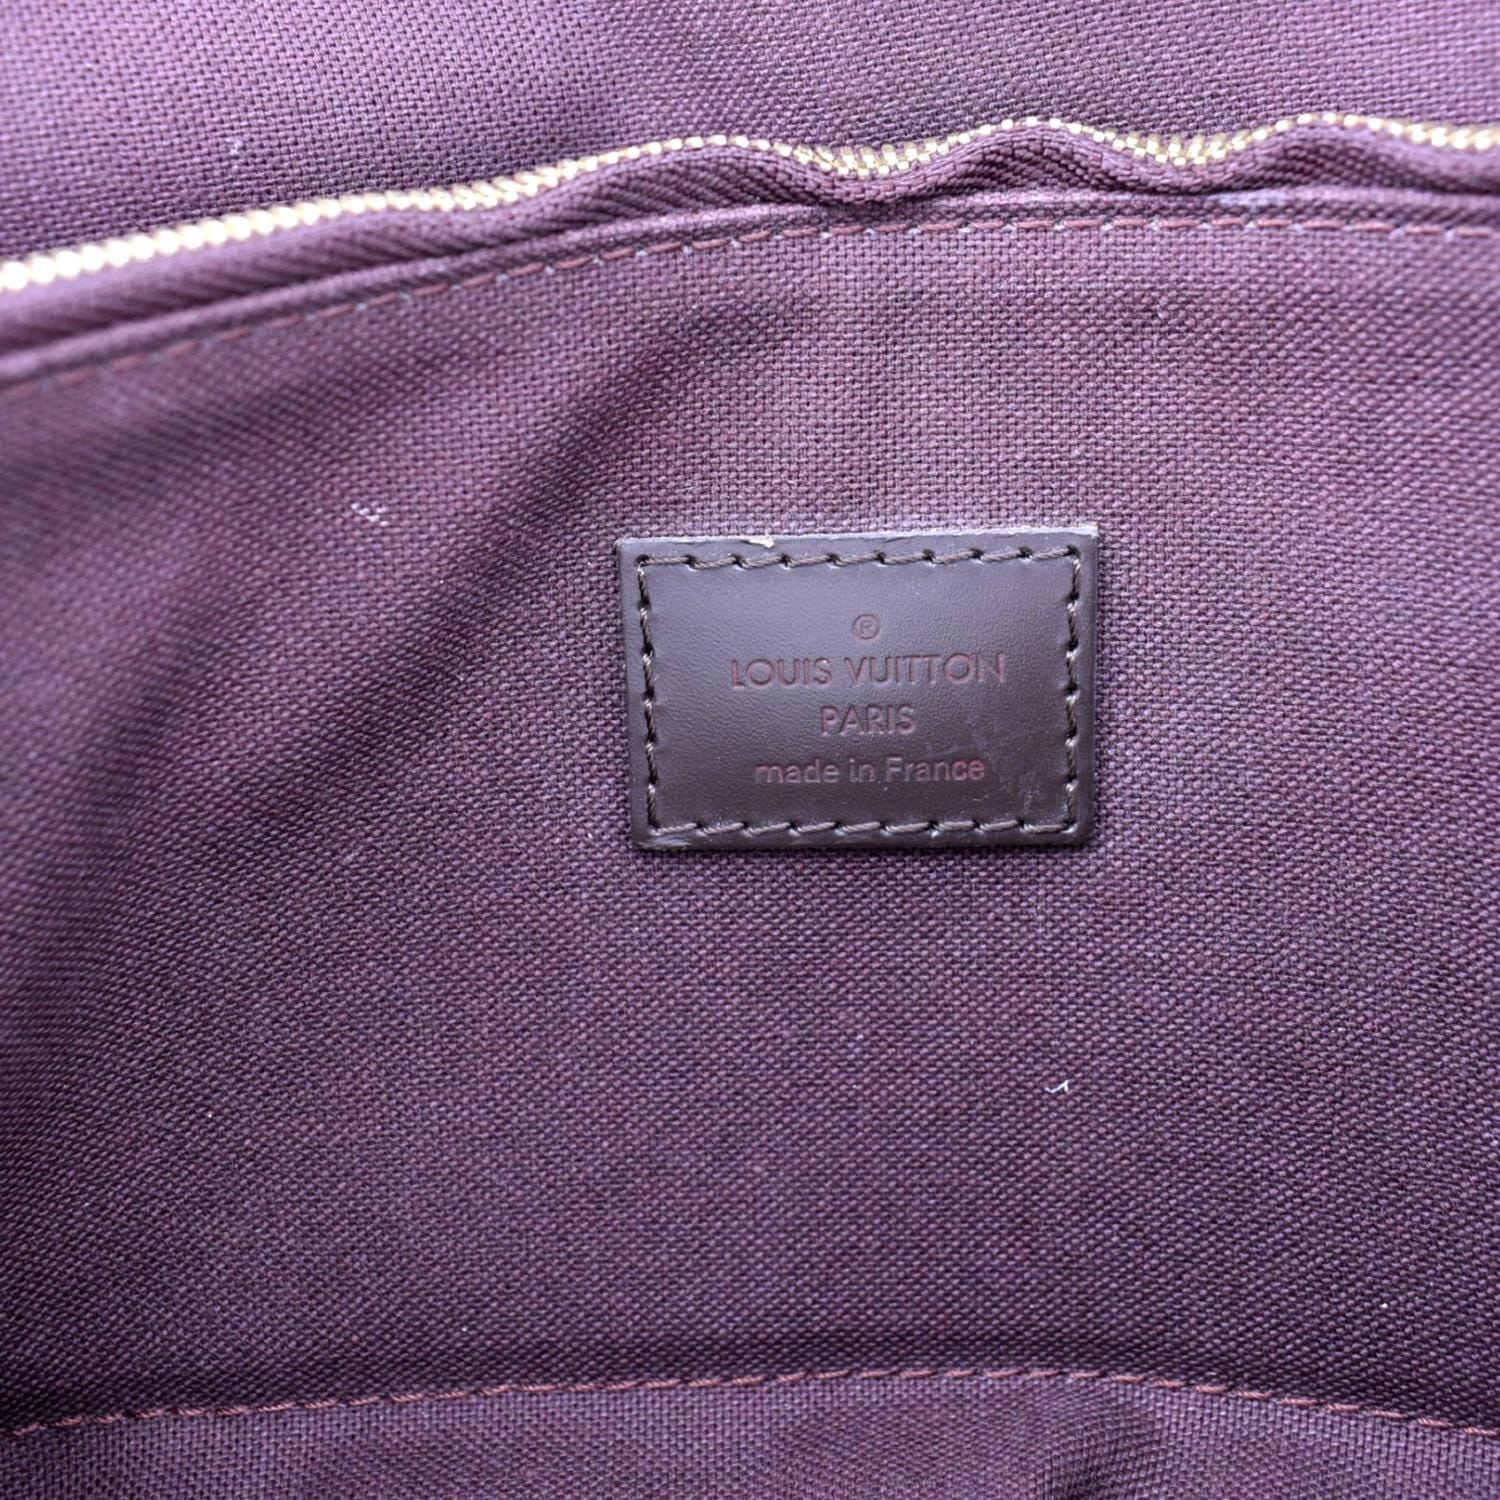 Louis Vuitton, Bags, Authentic Louis Vuitton Hoxton Pm